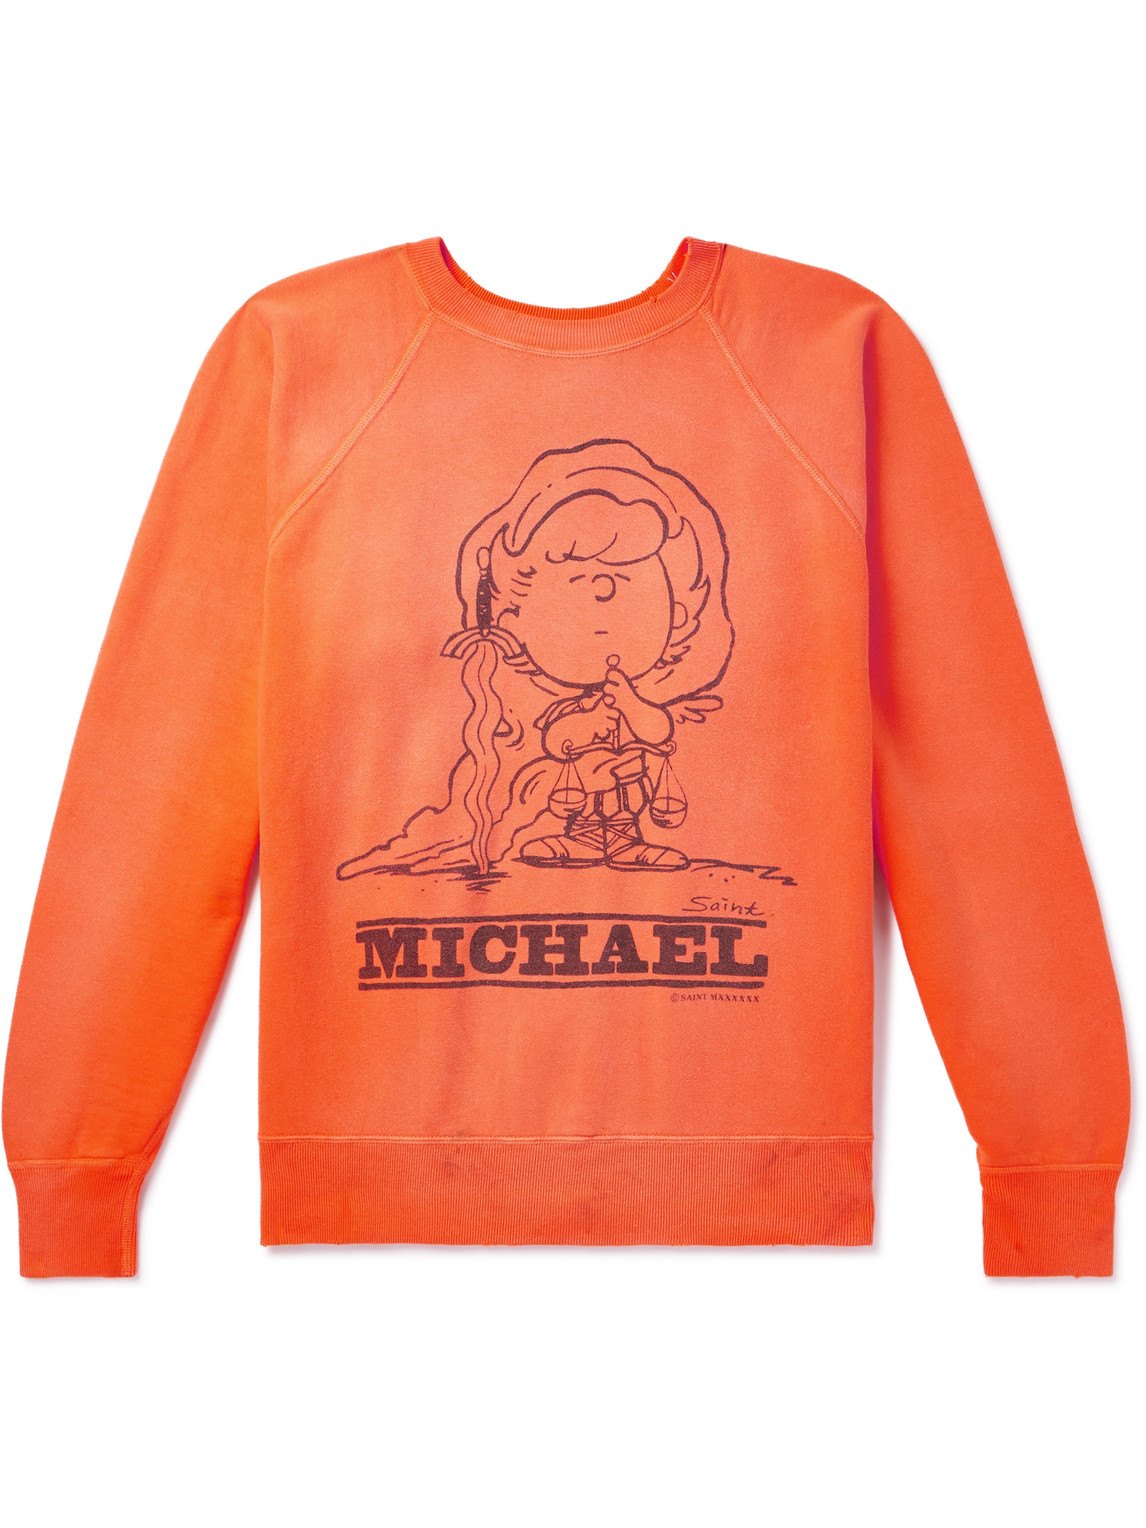 SAINT Mxxxxxx - Michael Distressed Printed Cotton-Jersey Sweatshirt - Men - Orange - S von SAINT Mxxxxxx